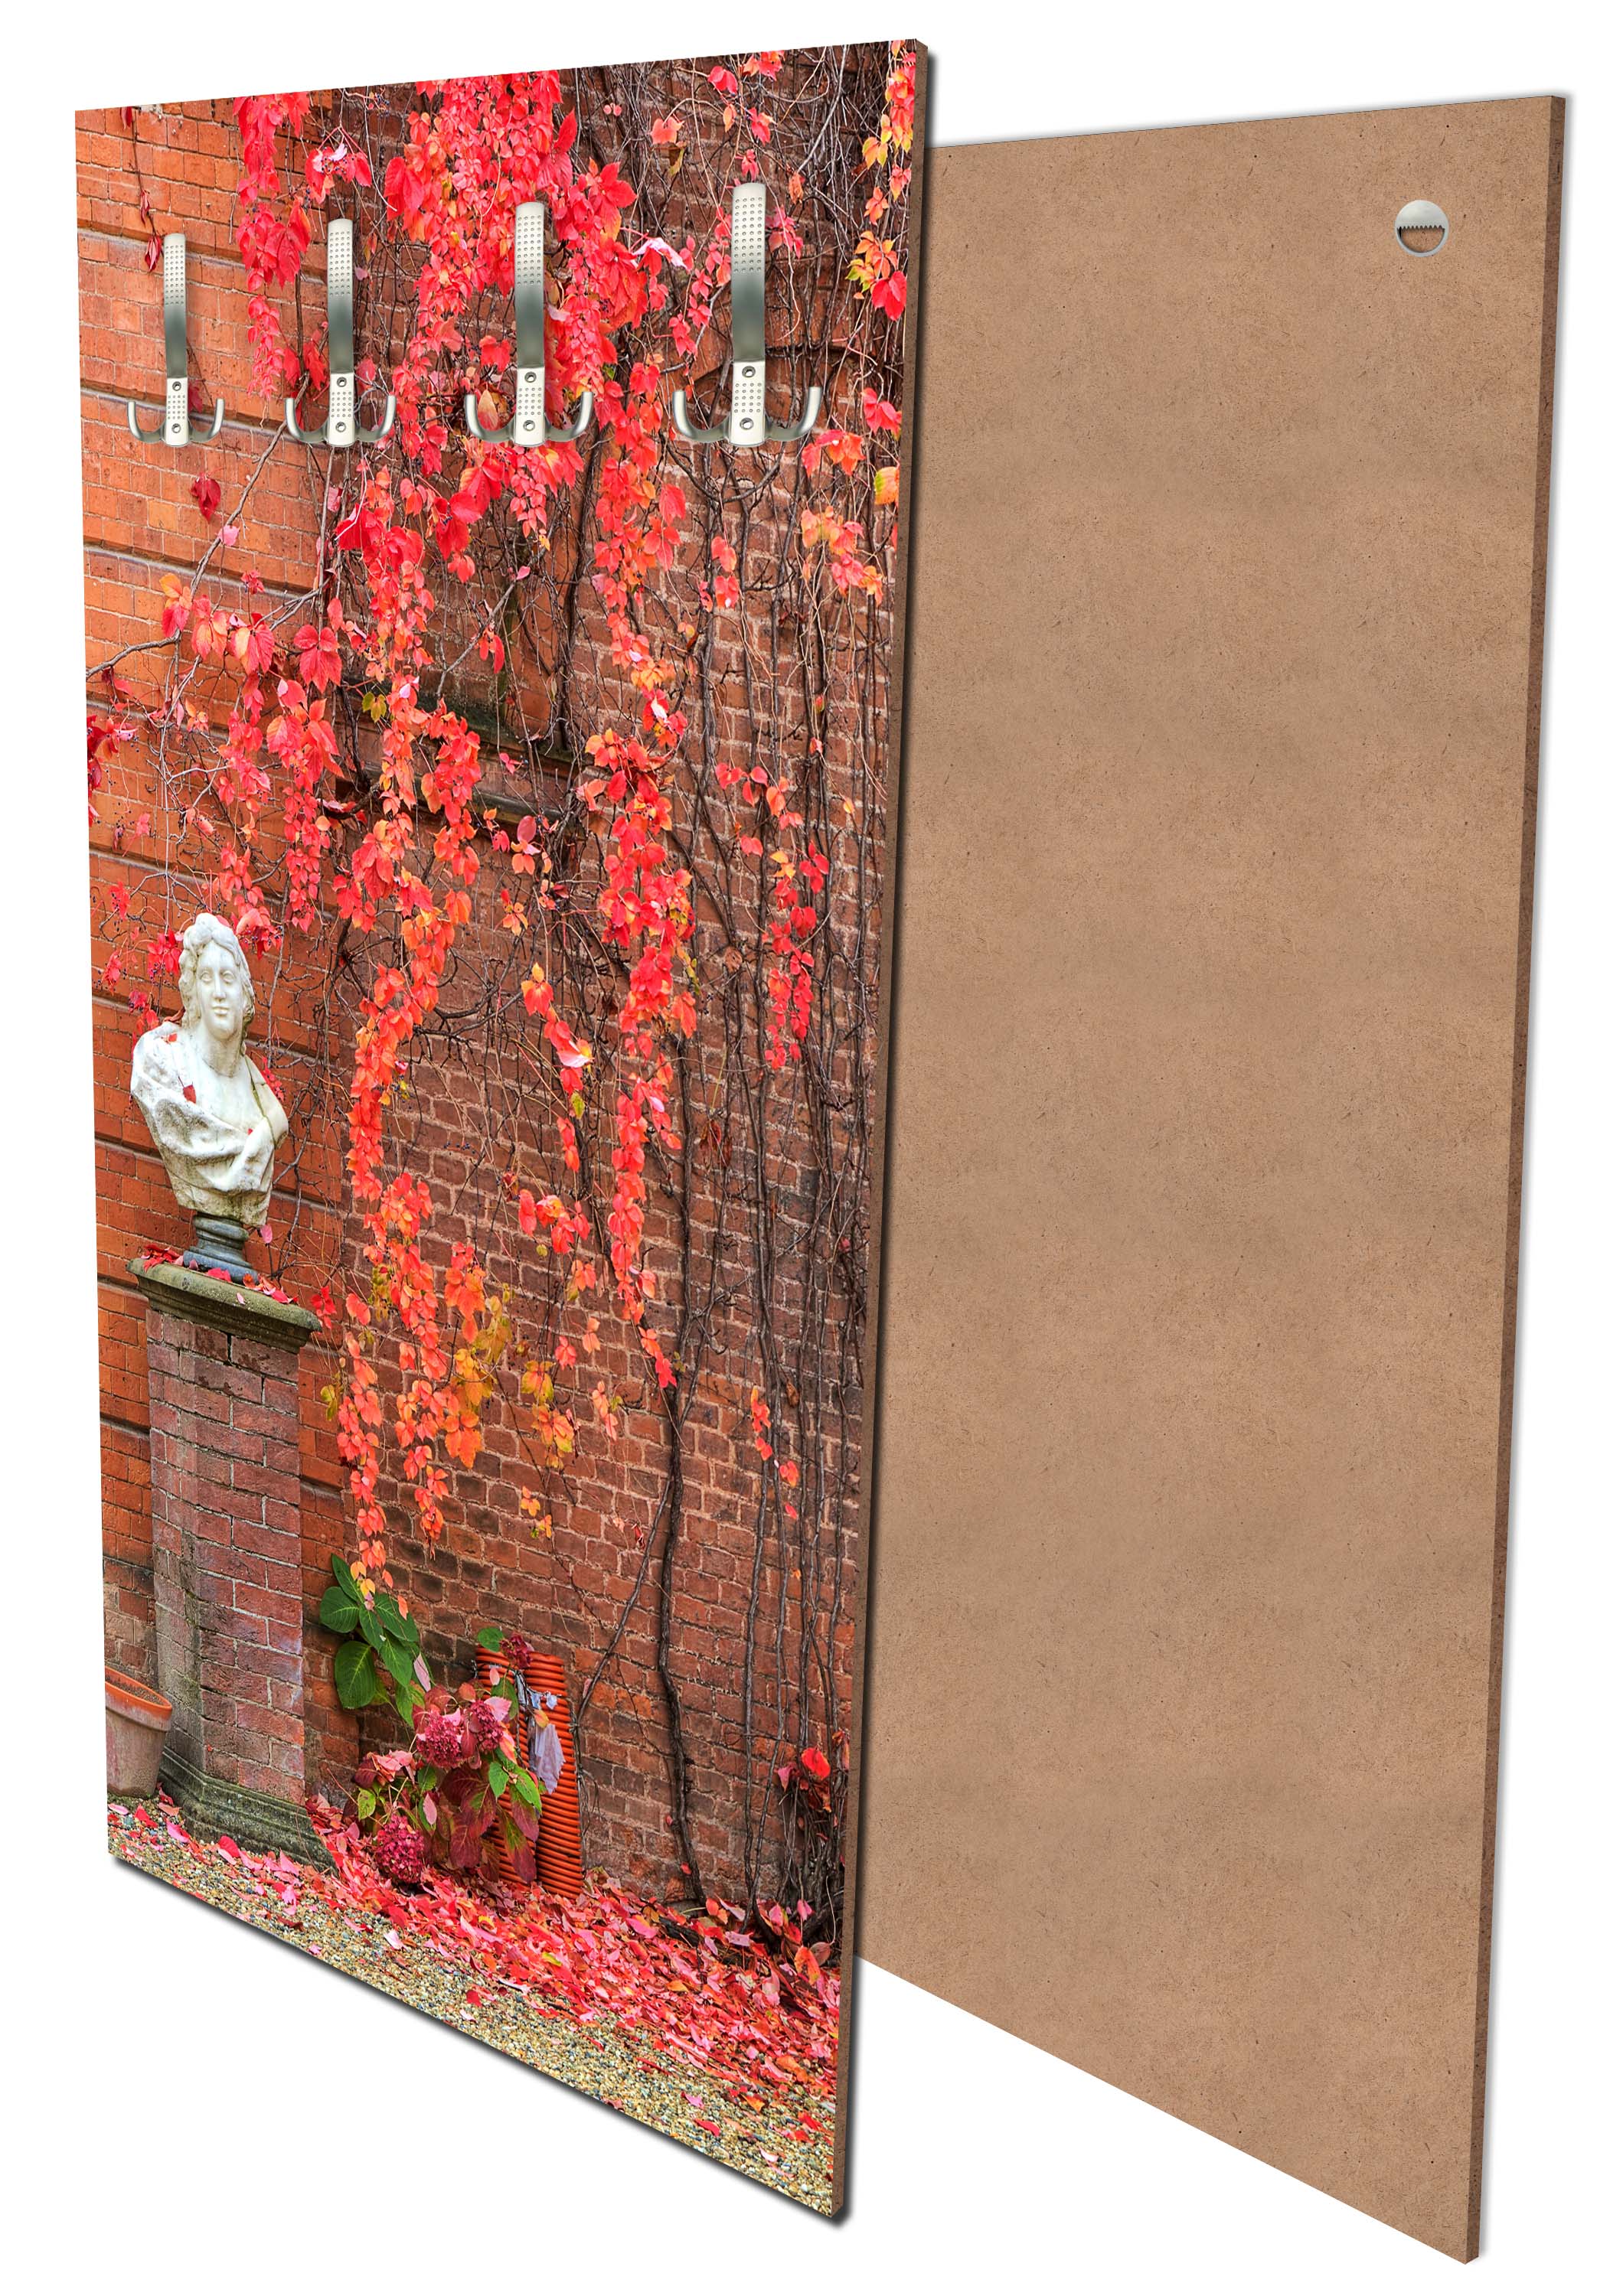 Garderobe Efeu mit roten Blättern wachsen auf einer roten Mauer M0789 entdecken - Bild 1